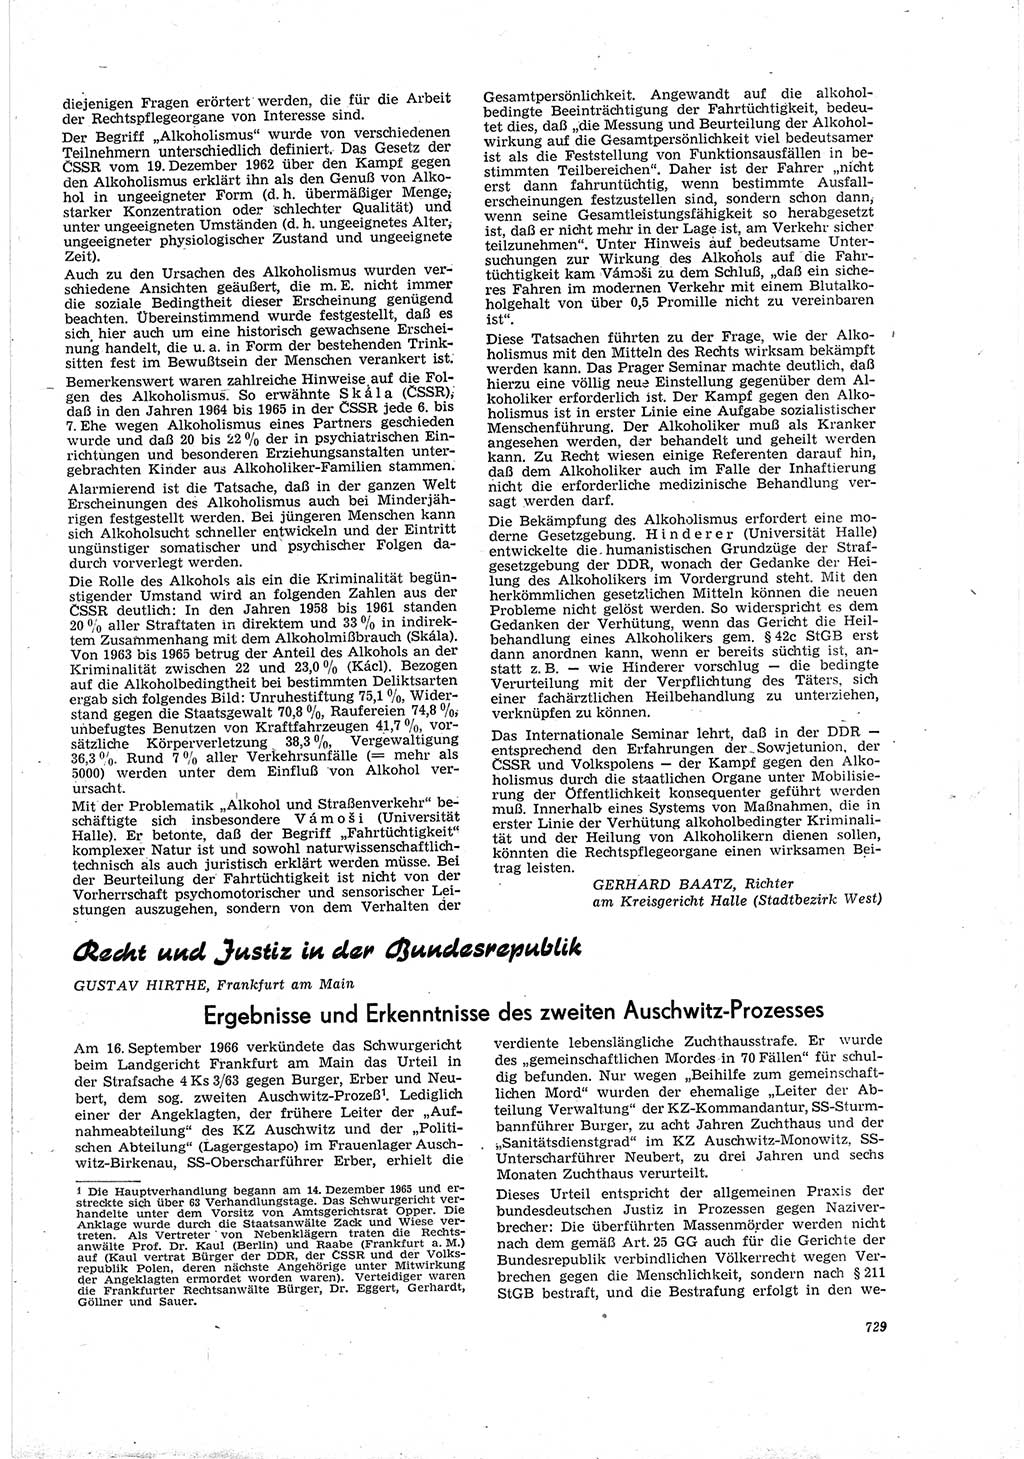 Neue Justiz (NJ), Zeitschrift für Recht und Rechtswissenschaft [Deutsche Demokratische Republik (DDR)], 20. Jahrgang 1966, Seite 729 (NJ DDR 1966, S. 729)